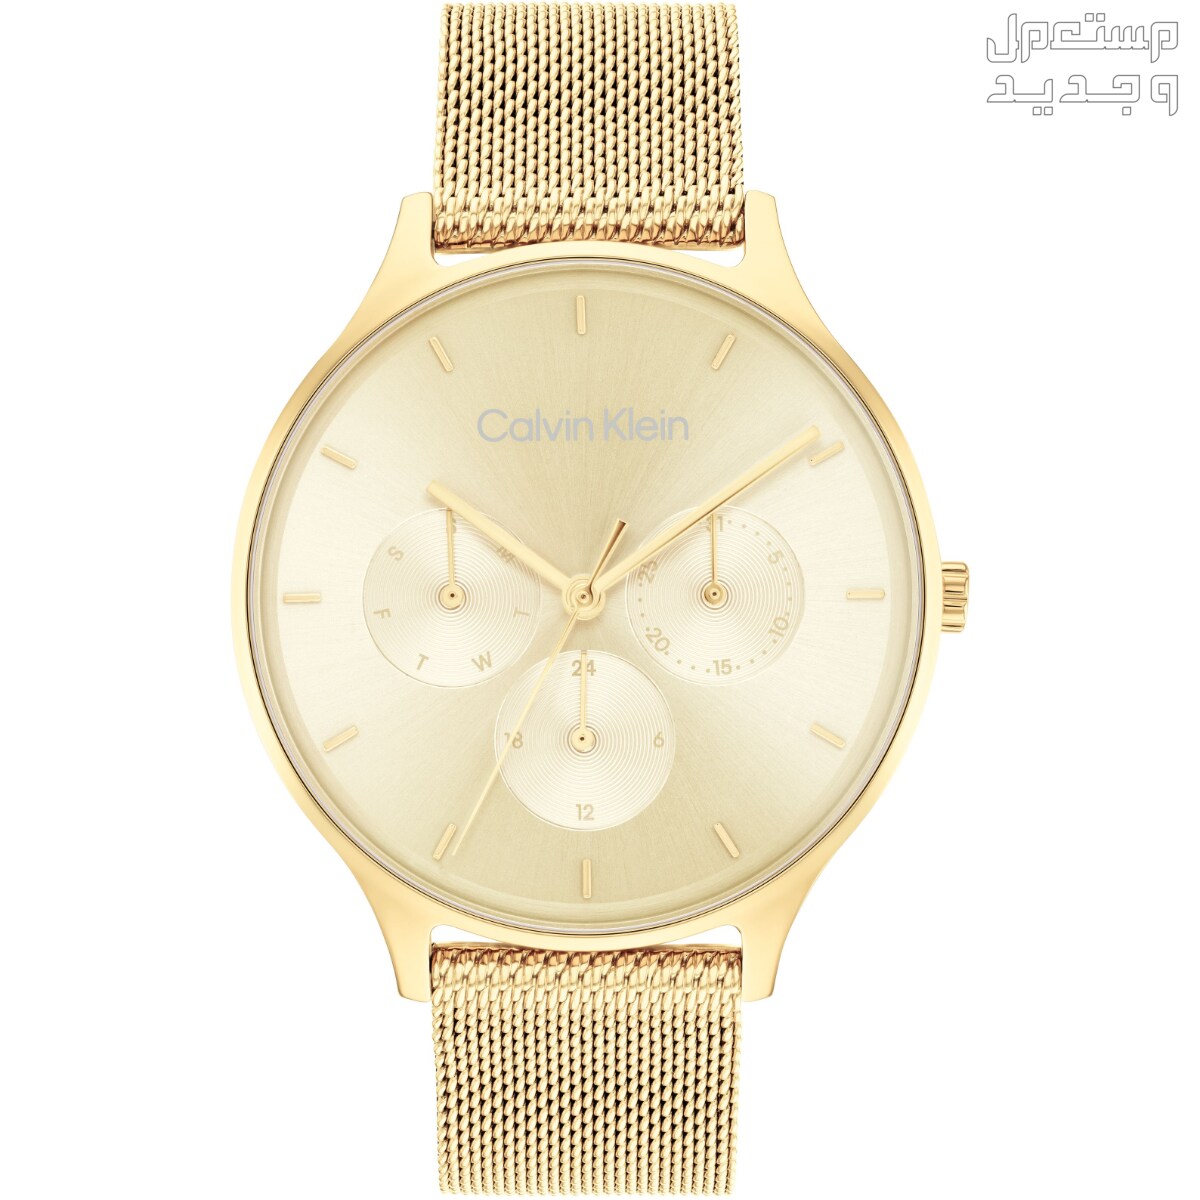 أنواع ساعات يد ذهب نسائية واسعارها في السعودية ساعة Calvin Klein Timeless Multifunction Day and Date Gold Steel Watch 25200103